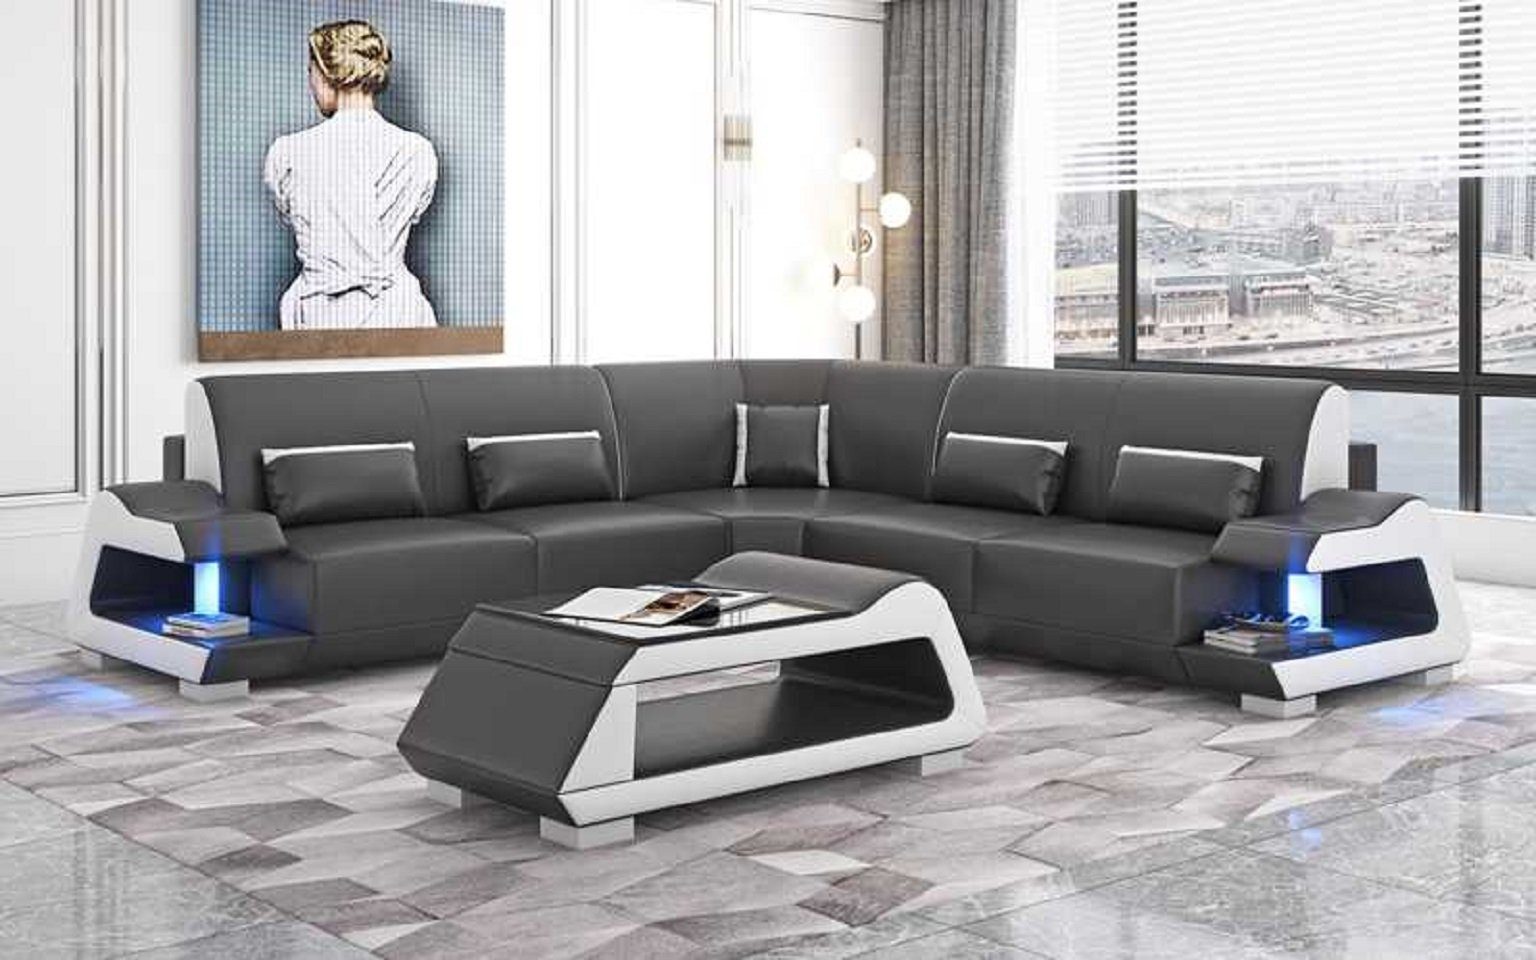 JVmoebel Ecksofa Luxus Ecksofa L Sofas, in 3 Europe Eckgarnitur Wohnzimmer Schwarz Teile, Form Sofa Made